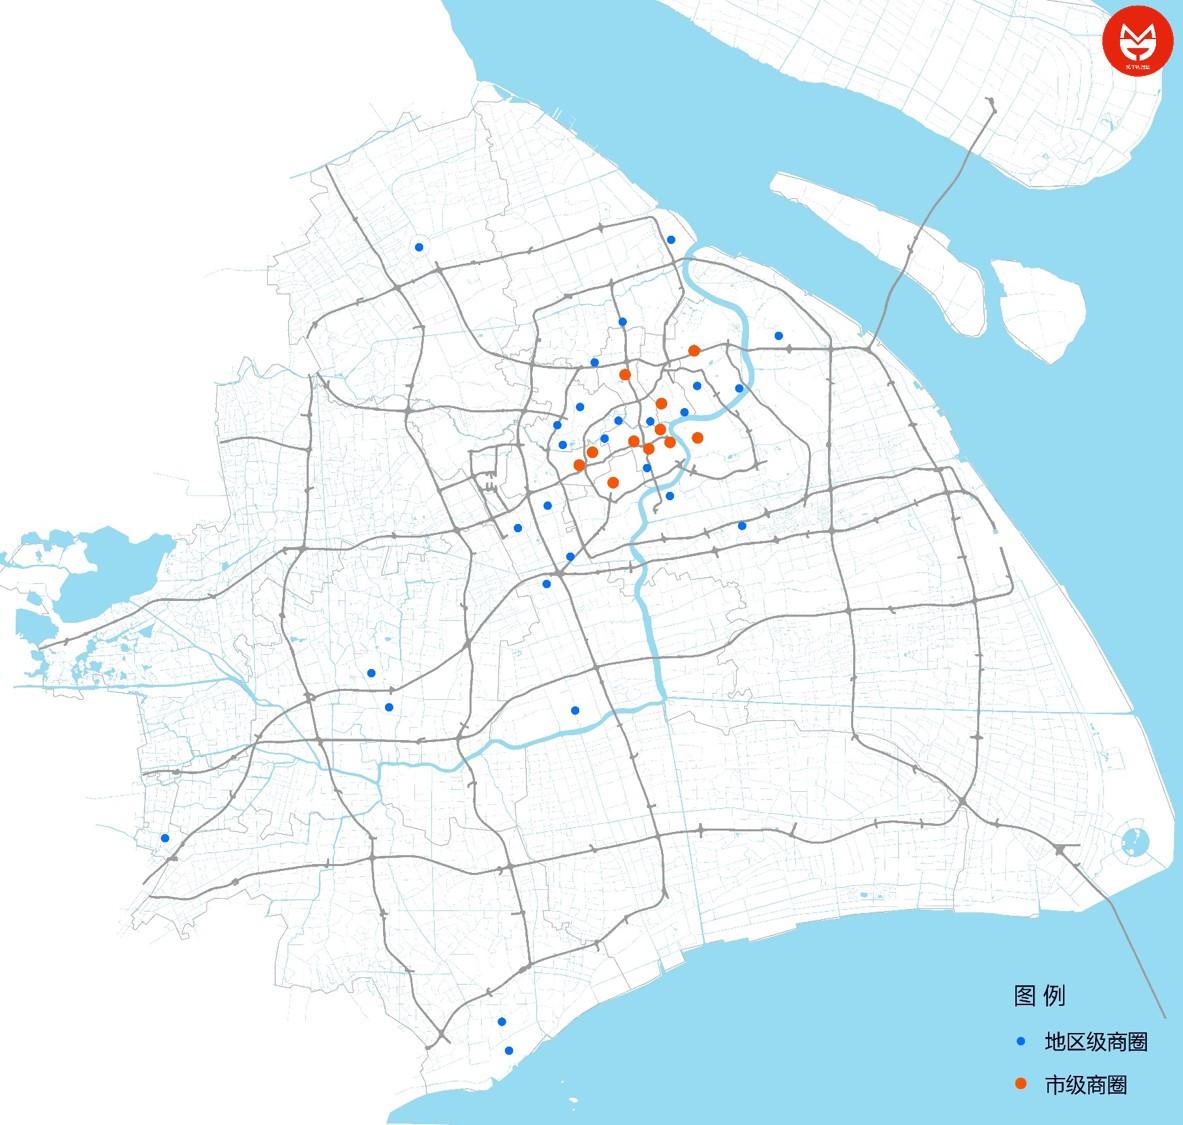 上海主要商圈消费及客流数据解读